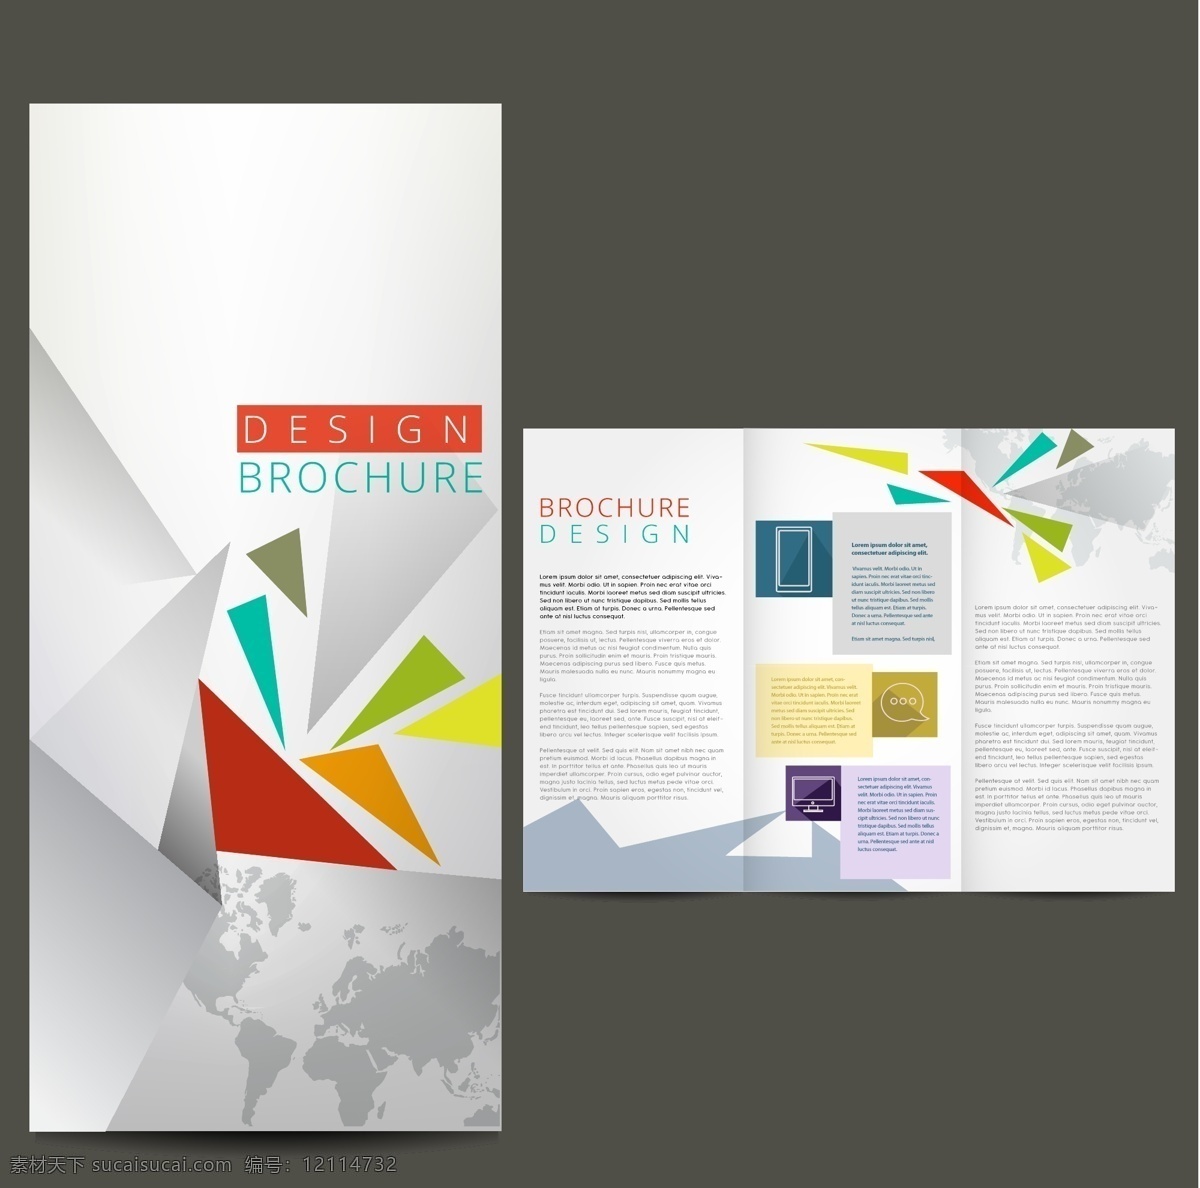 白色 素雅 企业 折页 宣传册 模板 矢量素材 设计素材 背景素材